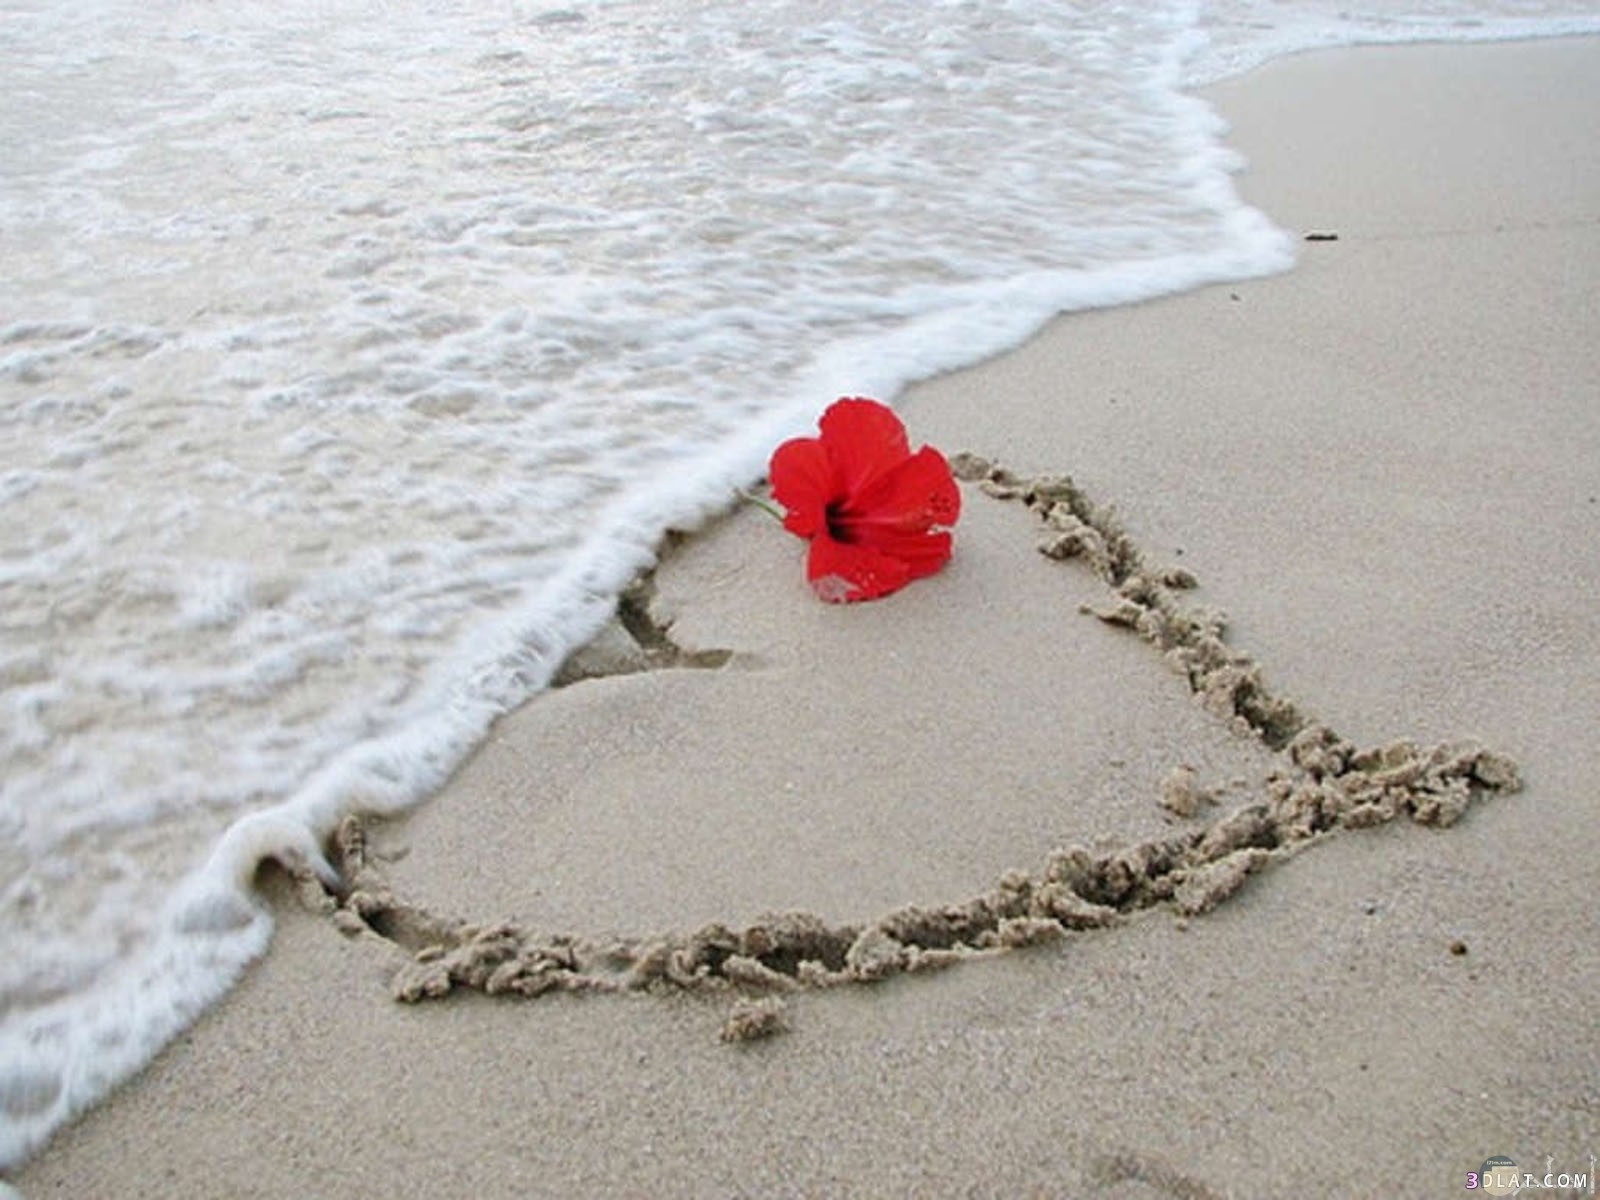 قلب مرسوم على رمال شاطئ البحر.